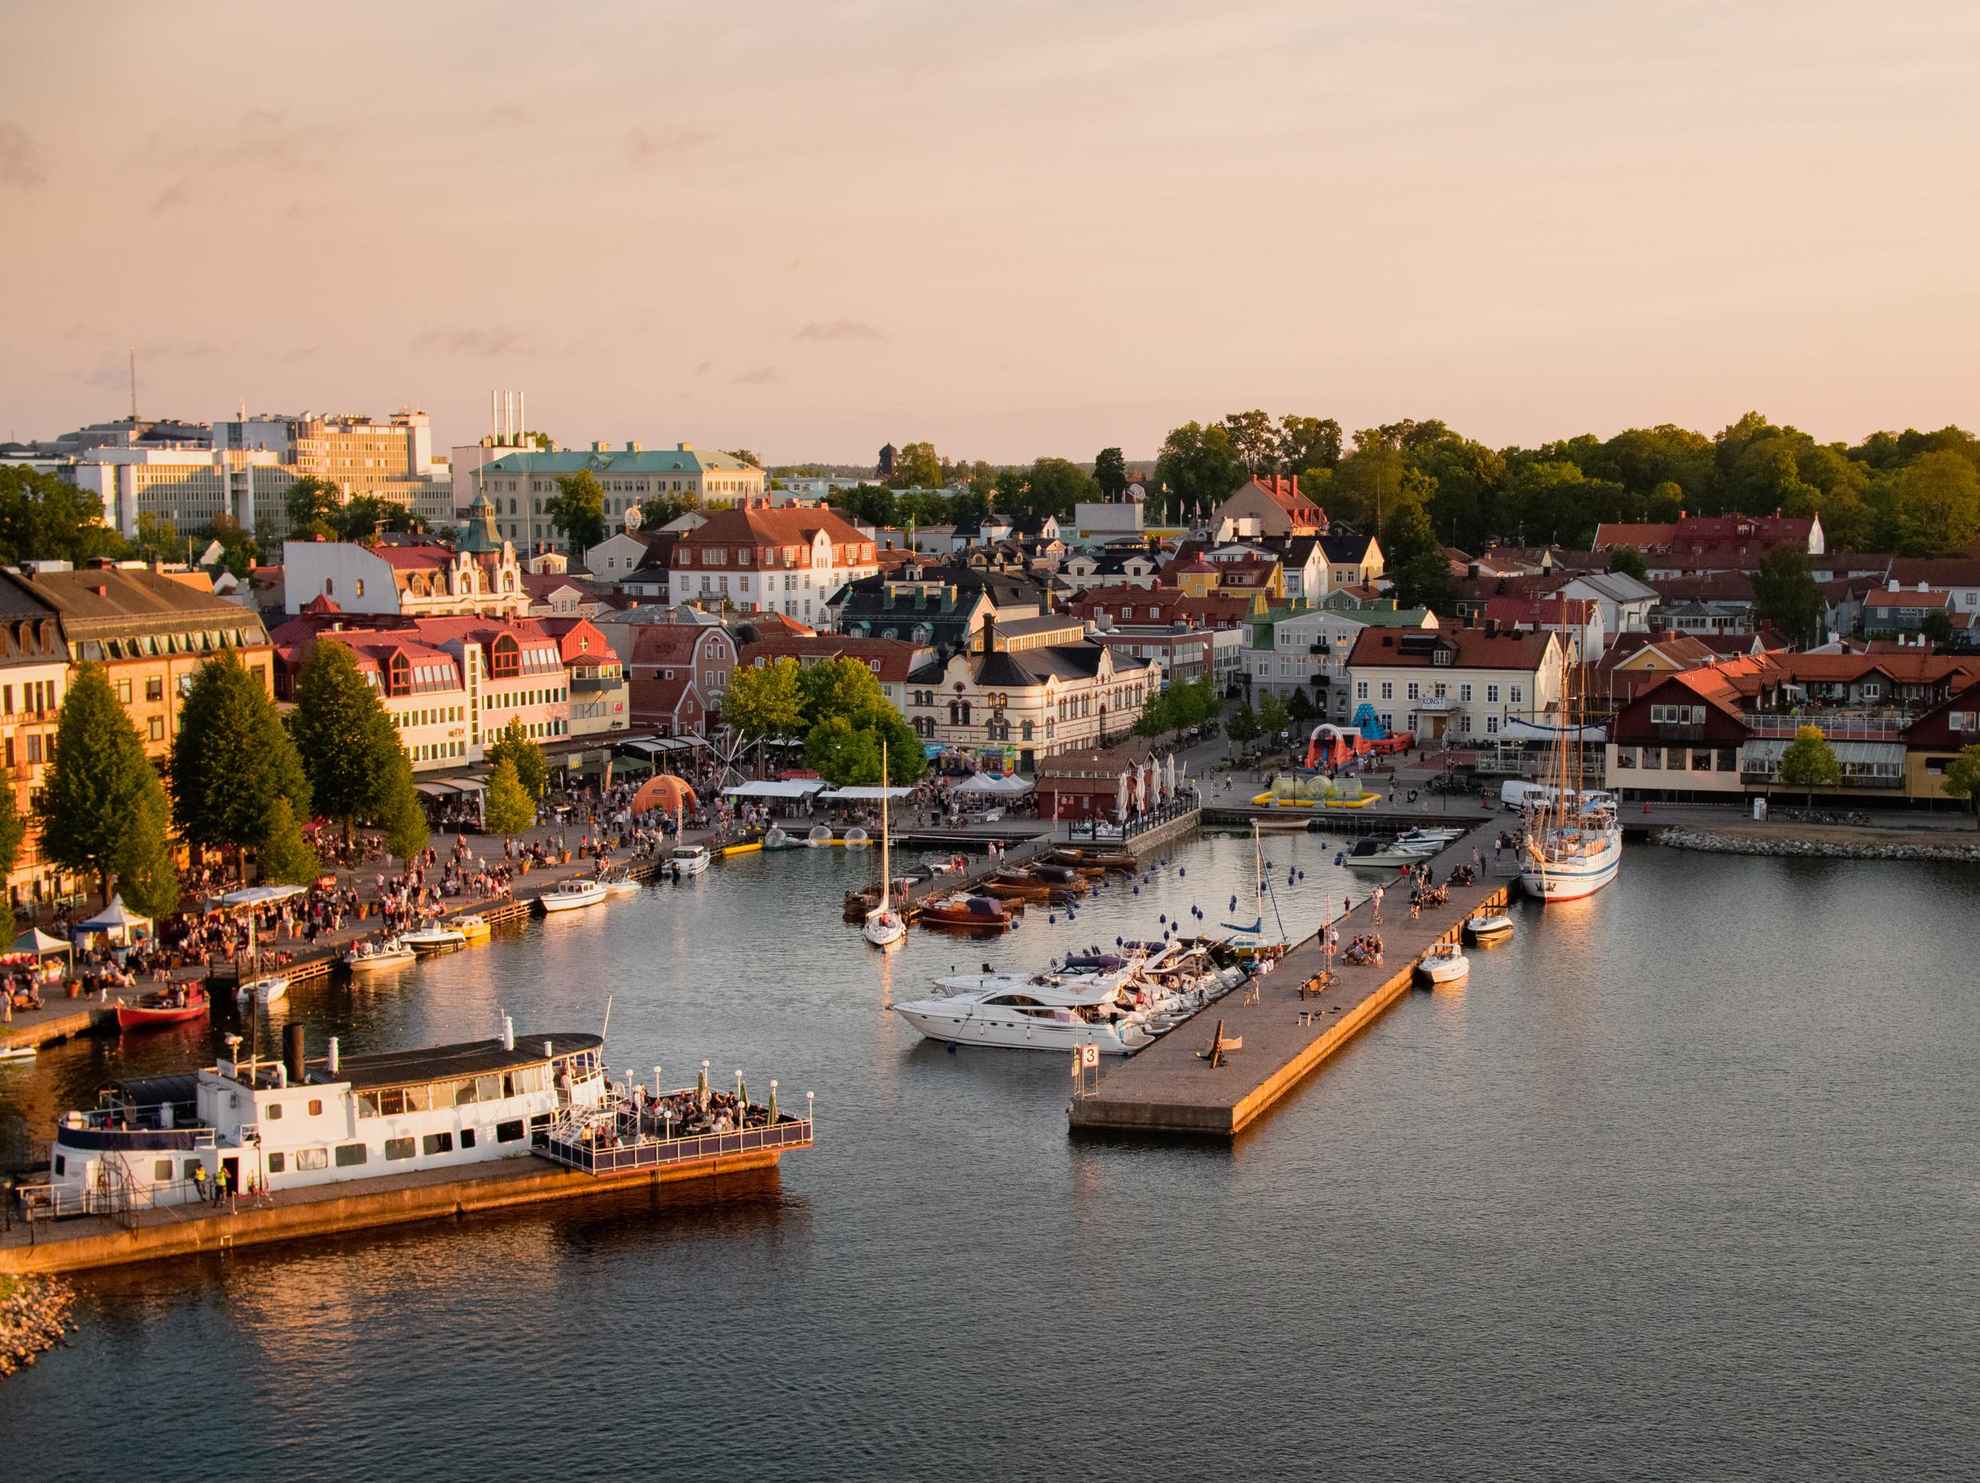 Vue sur le centre-ville de Västervik avec son port. Plusieurs bateaux sont amarrés aux quais. Il y a beaucoup de monde rassemblé sur la jetée et dans les terrasses des restaurants.